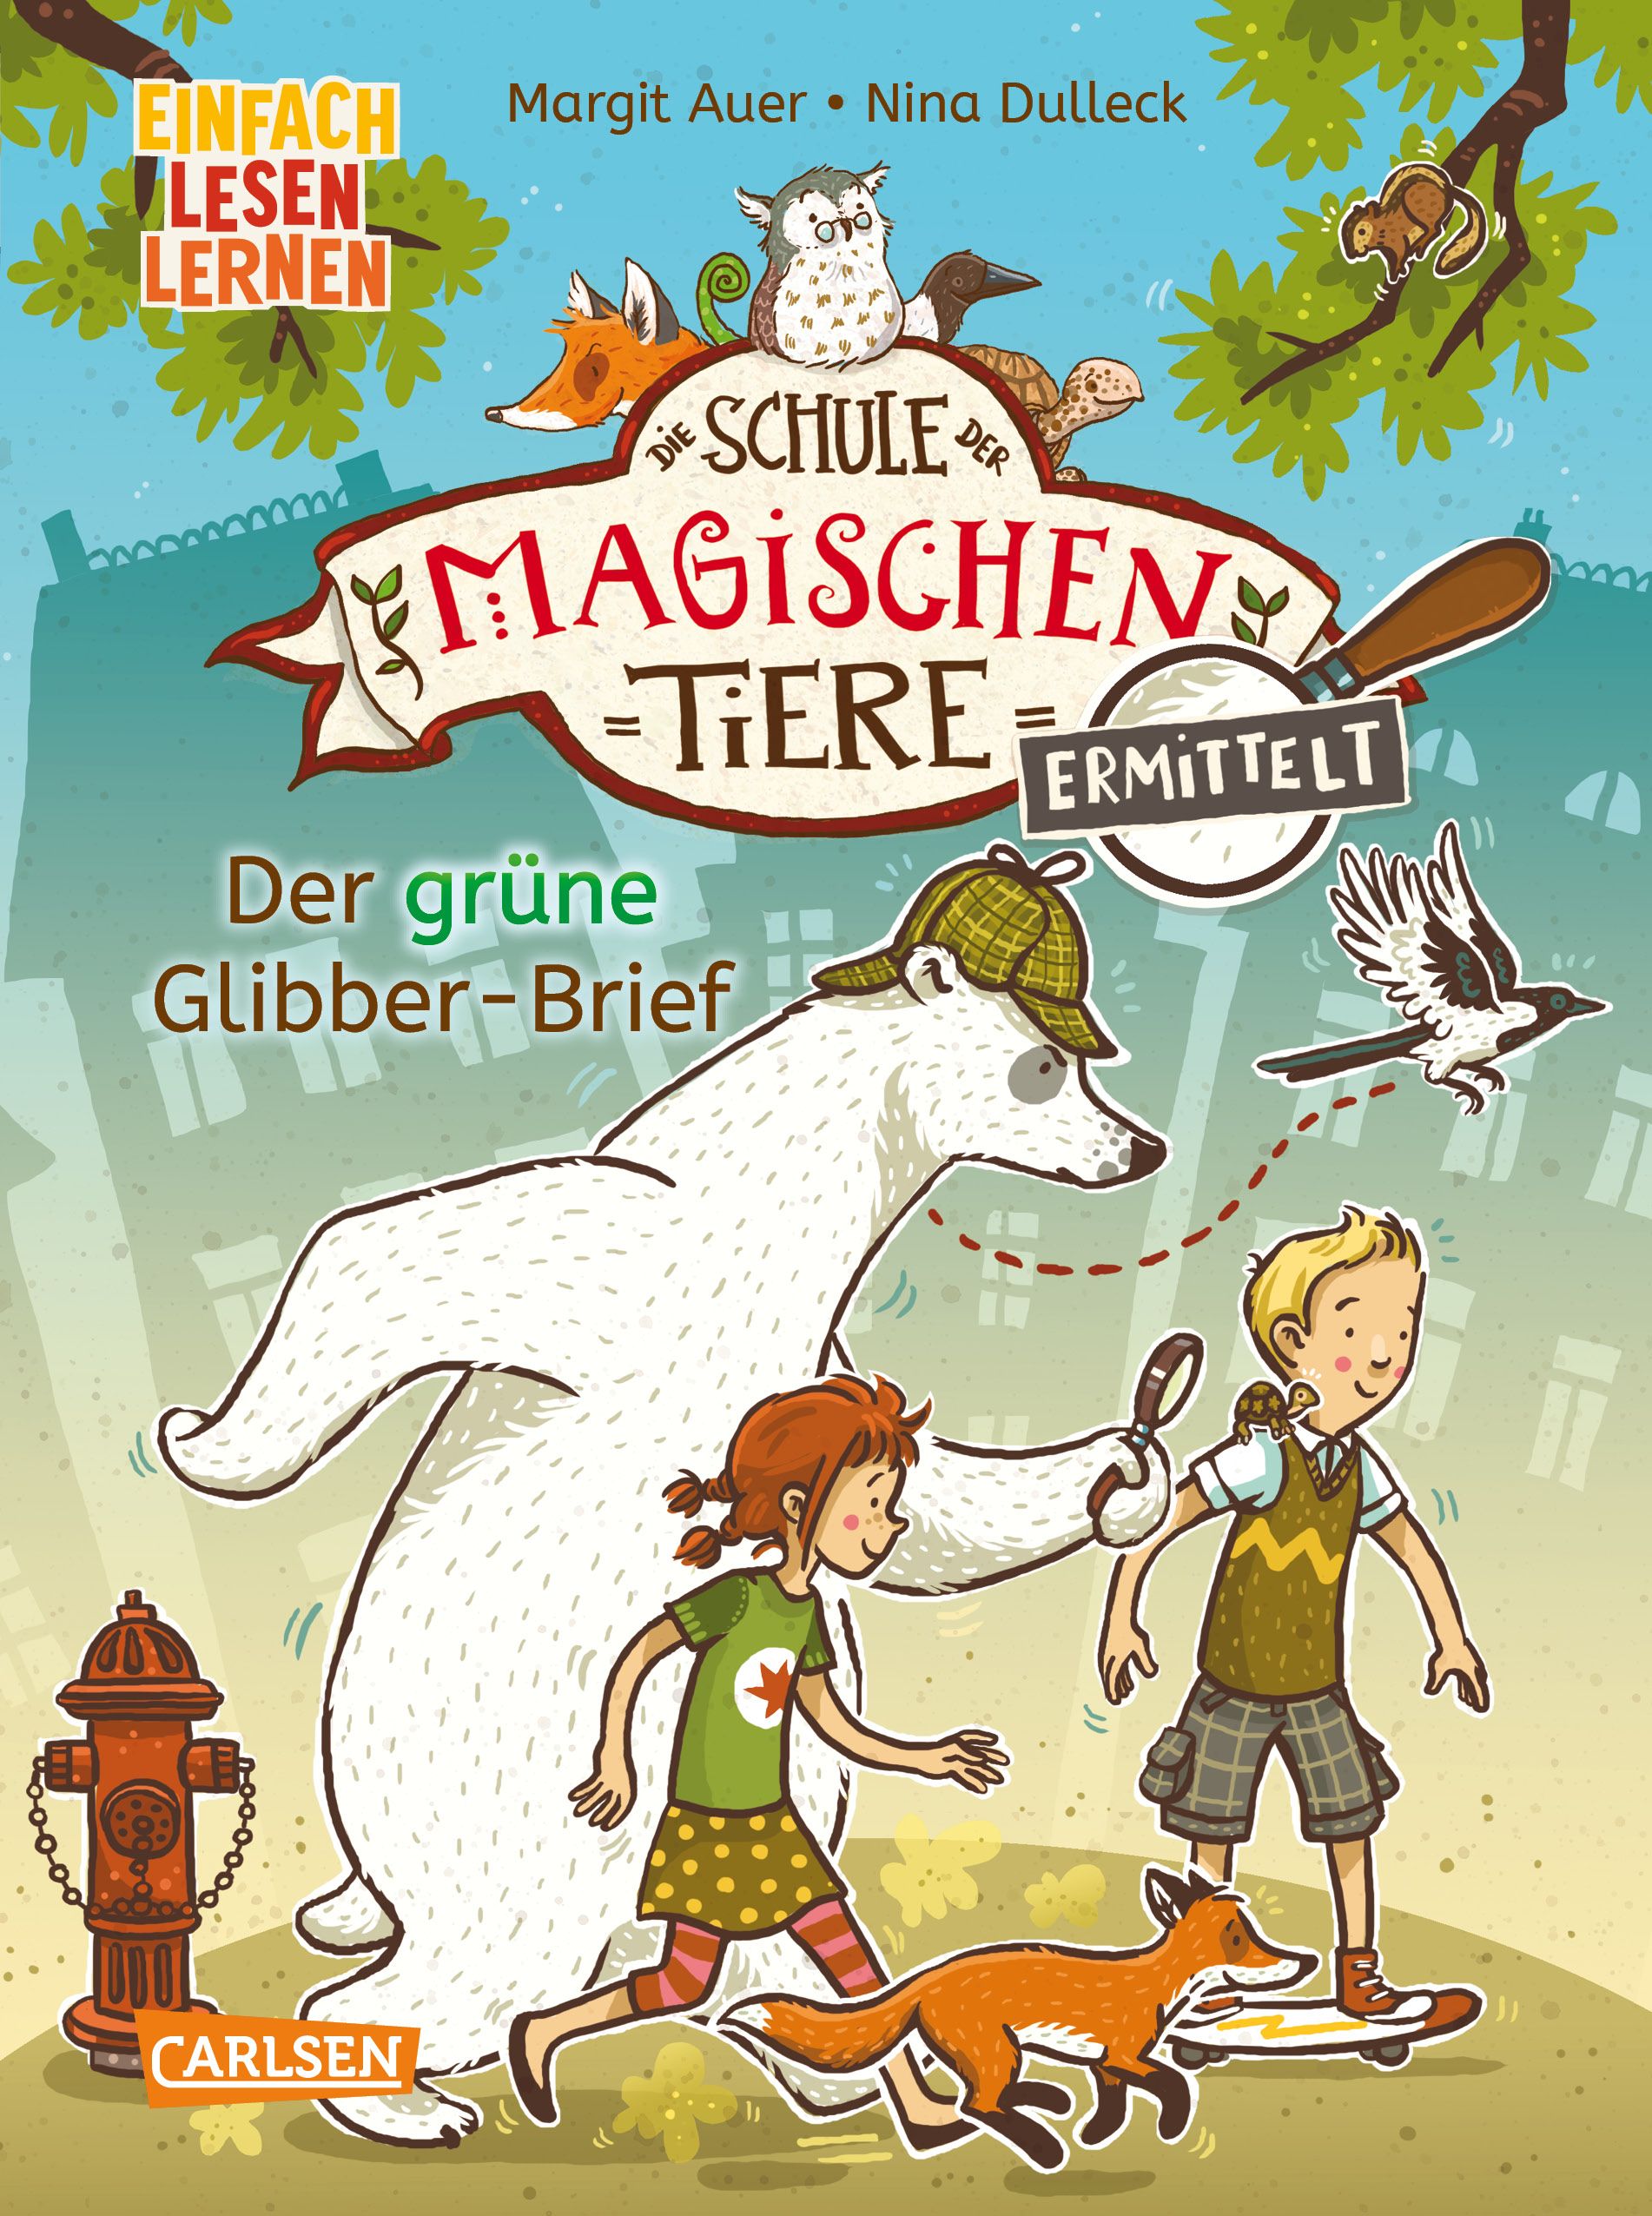 Cover "Die Schule der magischen Tiere ermittelt: Der grüne Glibber-Brief"